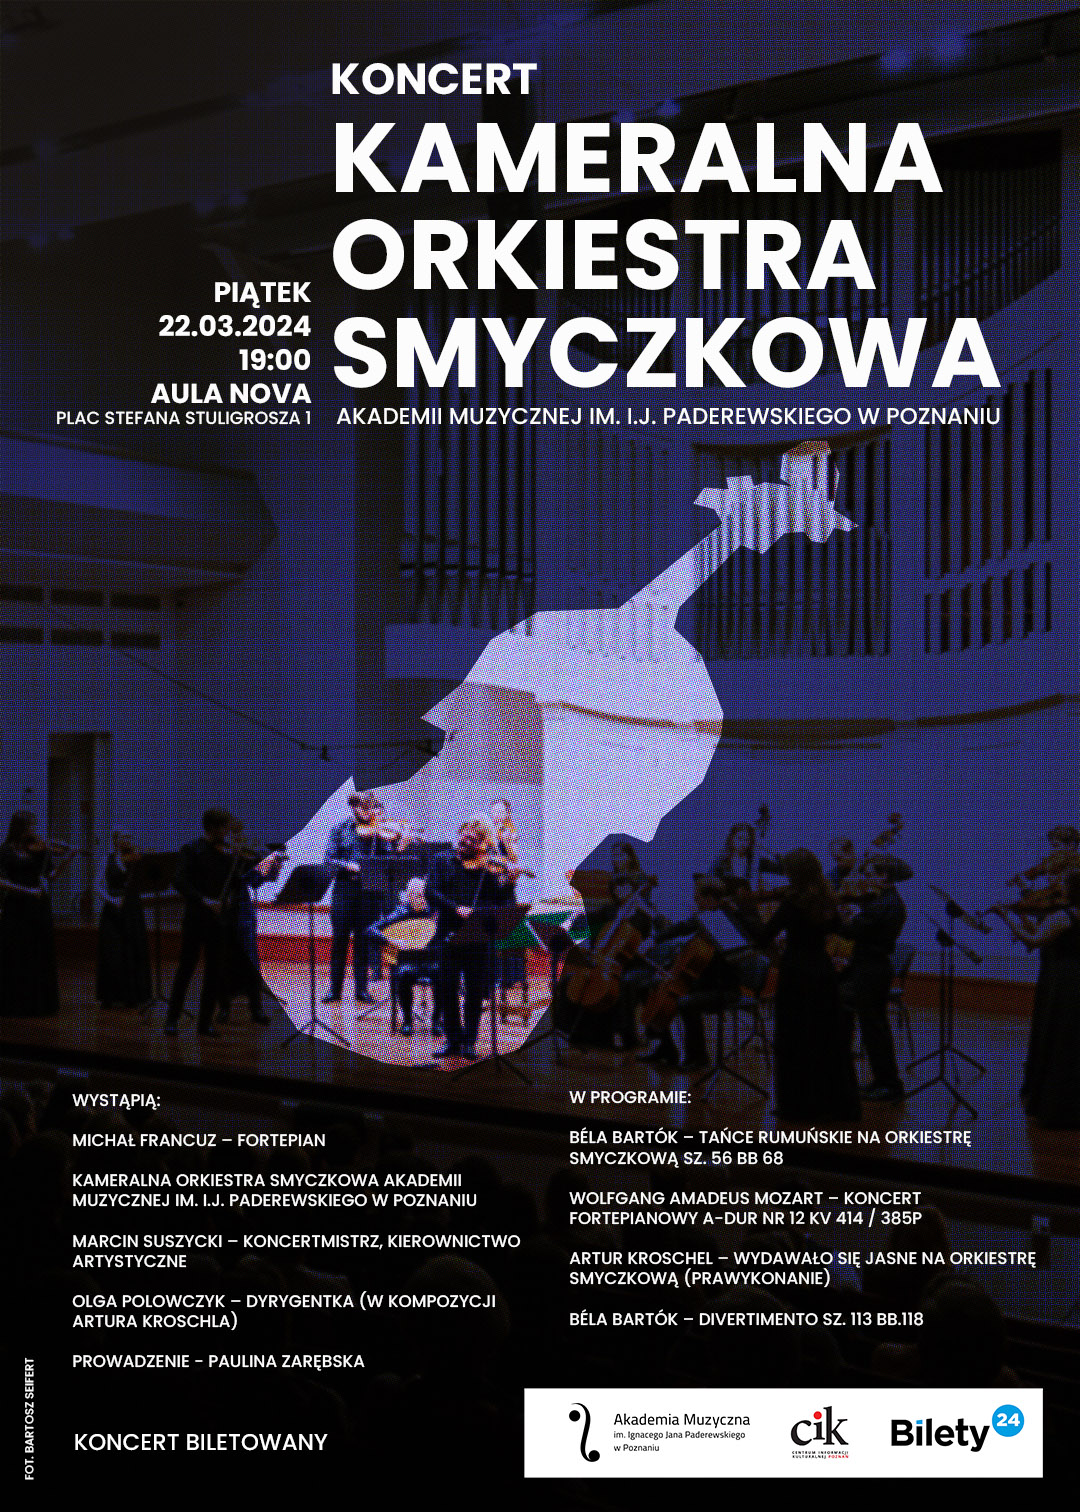 Plakat zawiera informacje o koncercie Kameralnej Orkiestry Smyczkowej w dniu 22 marca 2024